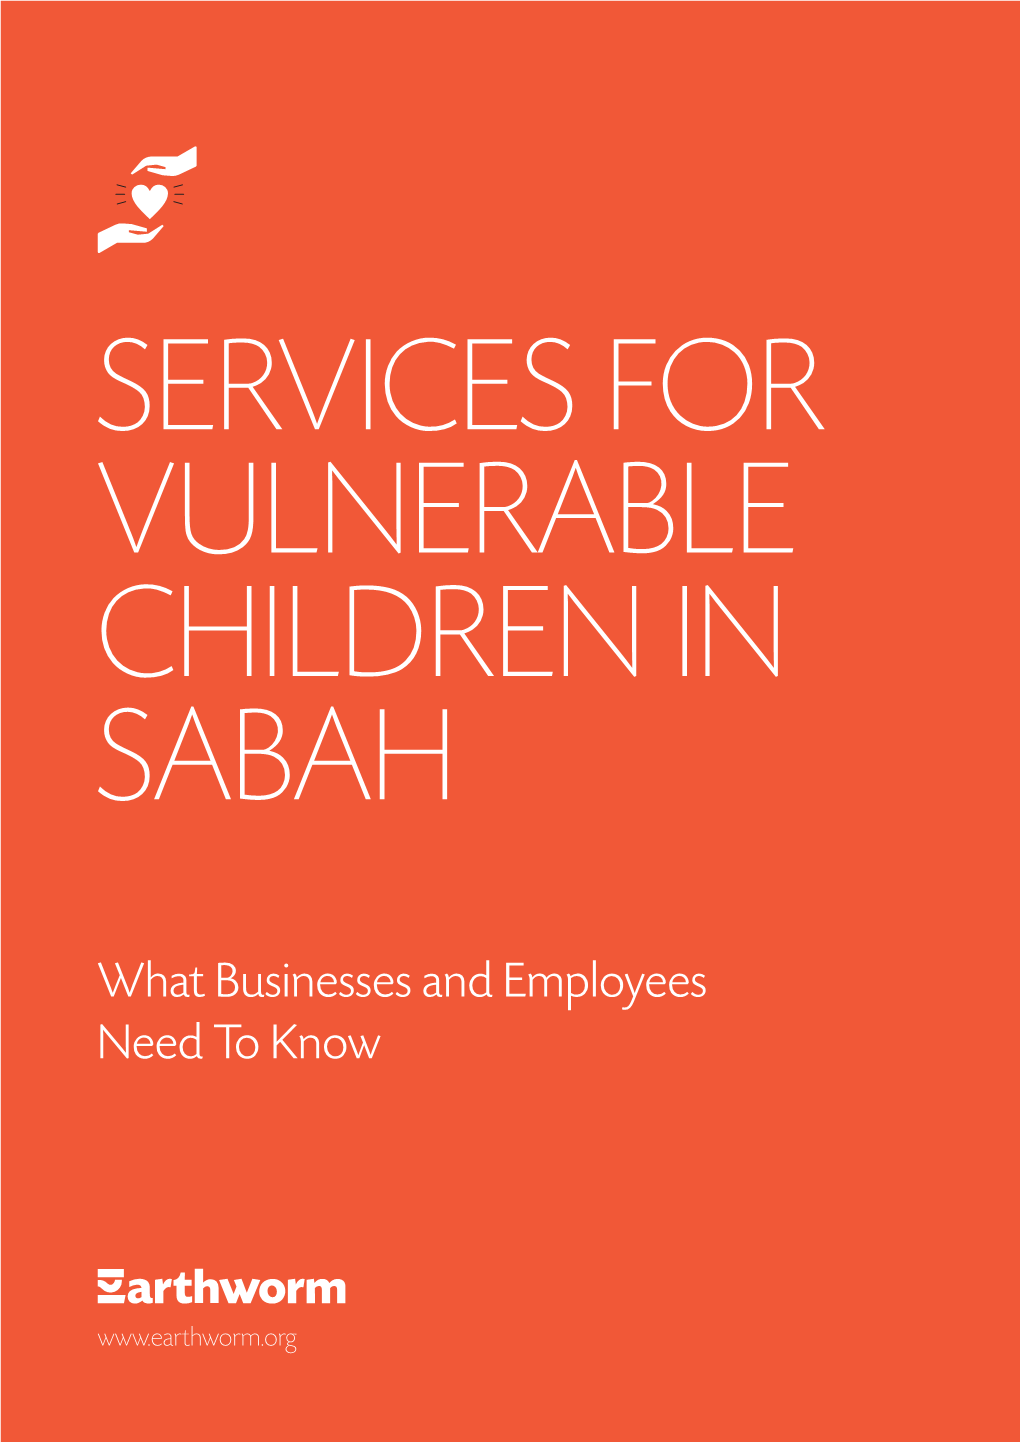 Services for Vulnerable Children in Sabah